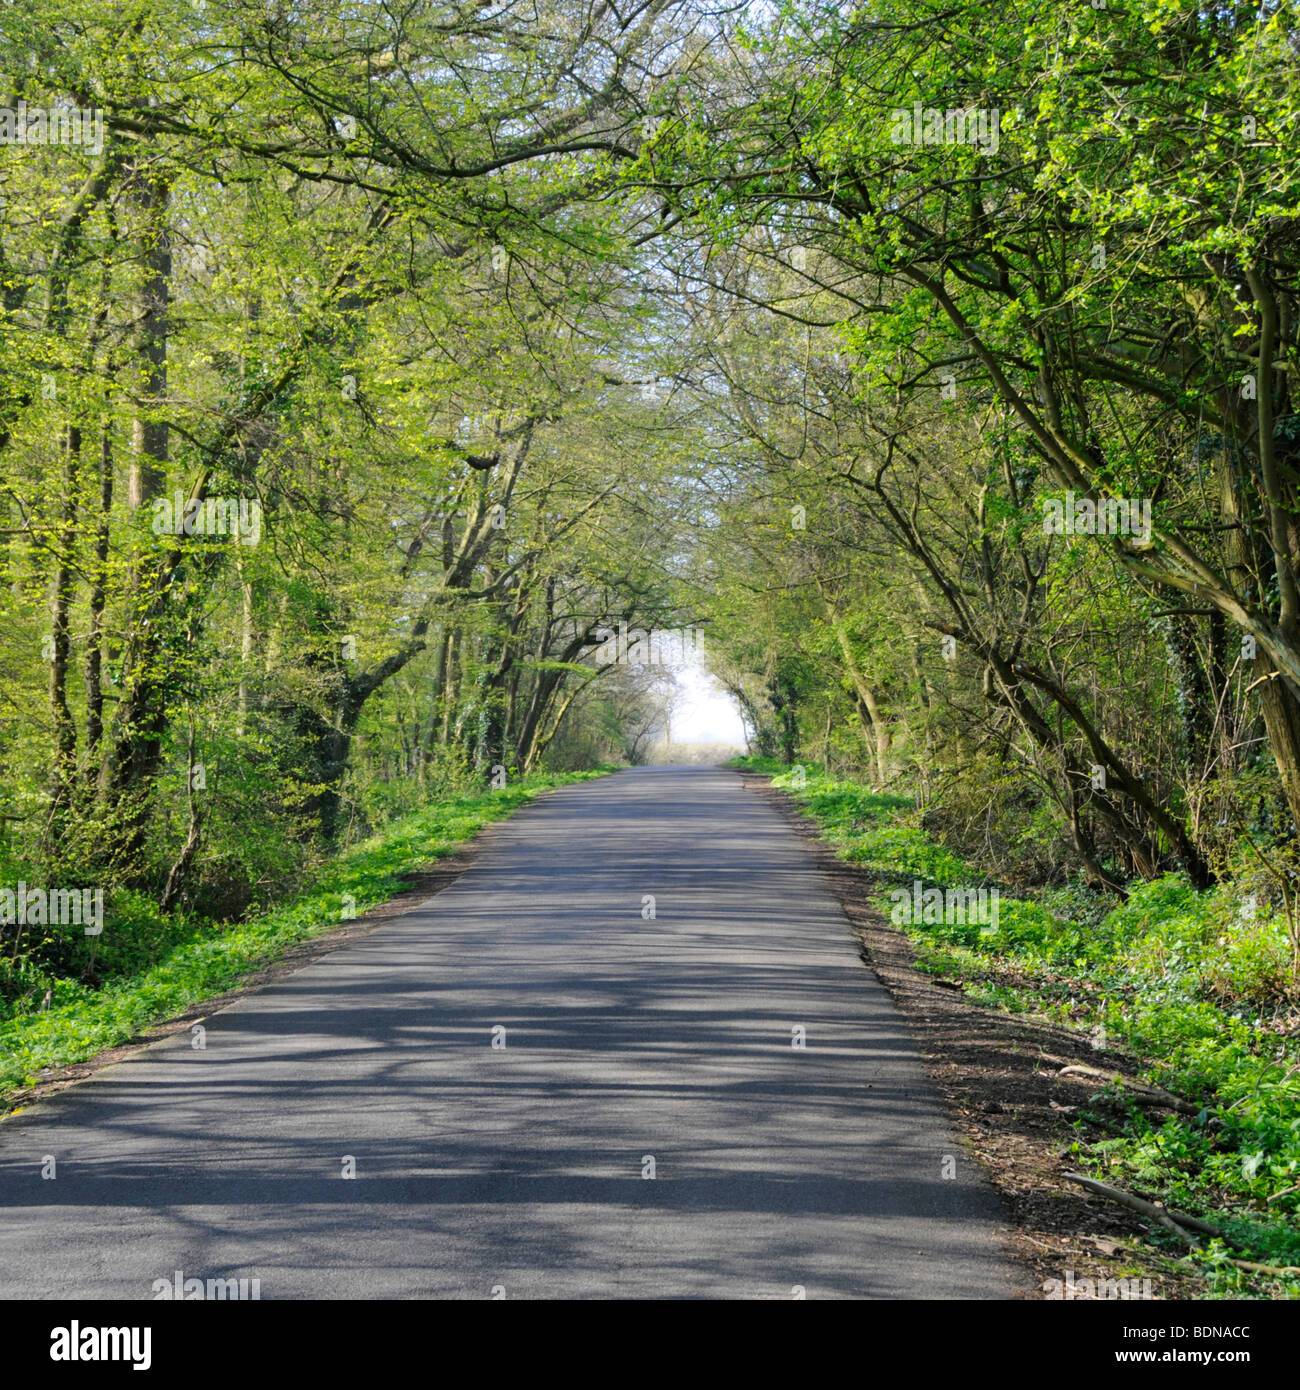 Longue ligne droite étroite ruelle de campagne tunnel vert printemps de branches d'arbre au-dessus et soleil jetant des ombres sur la route tarmac Essex Angleterre Royaume-Uni Banque D'Images